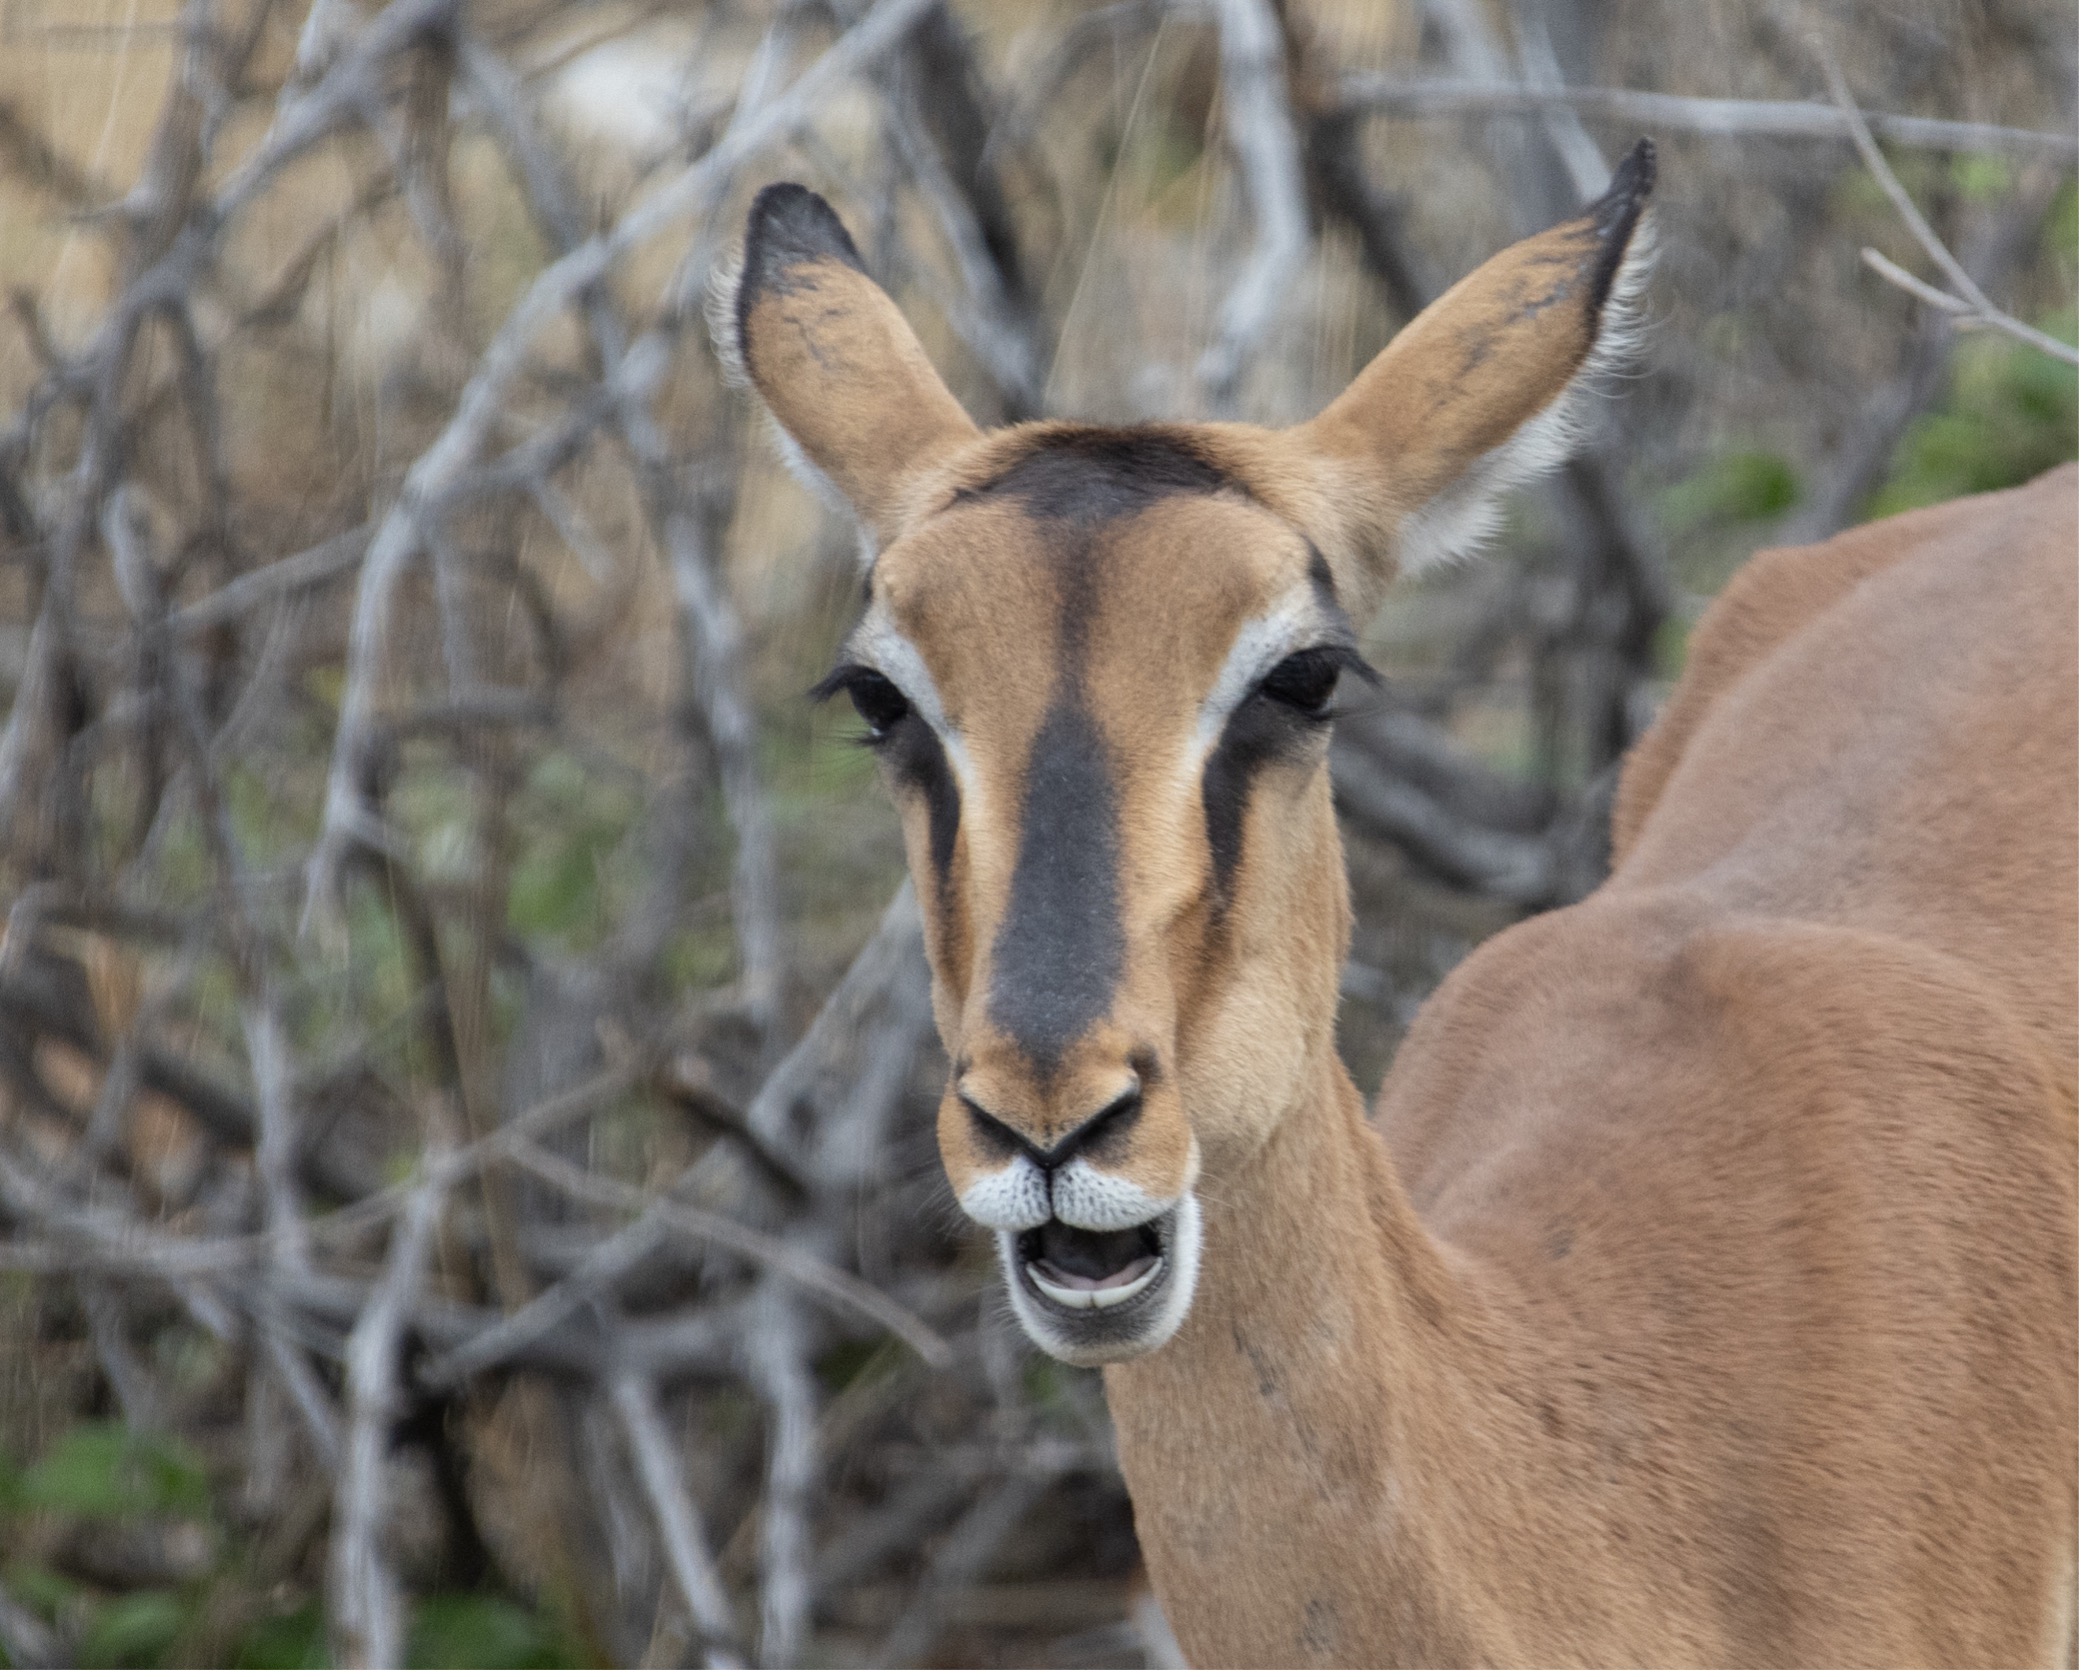 Schwarznasen-Impala - Black-faced Impala, Etosha National Park